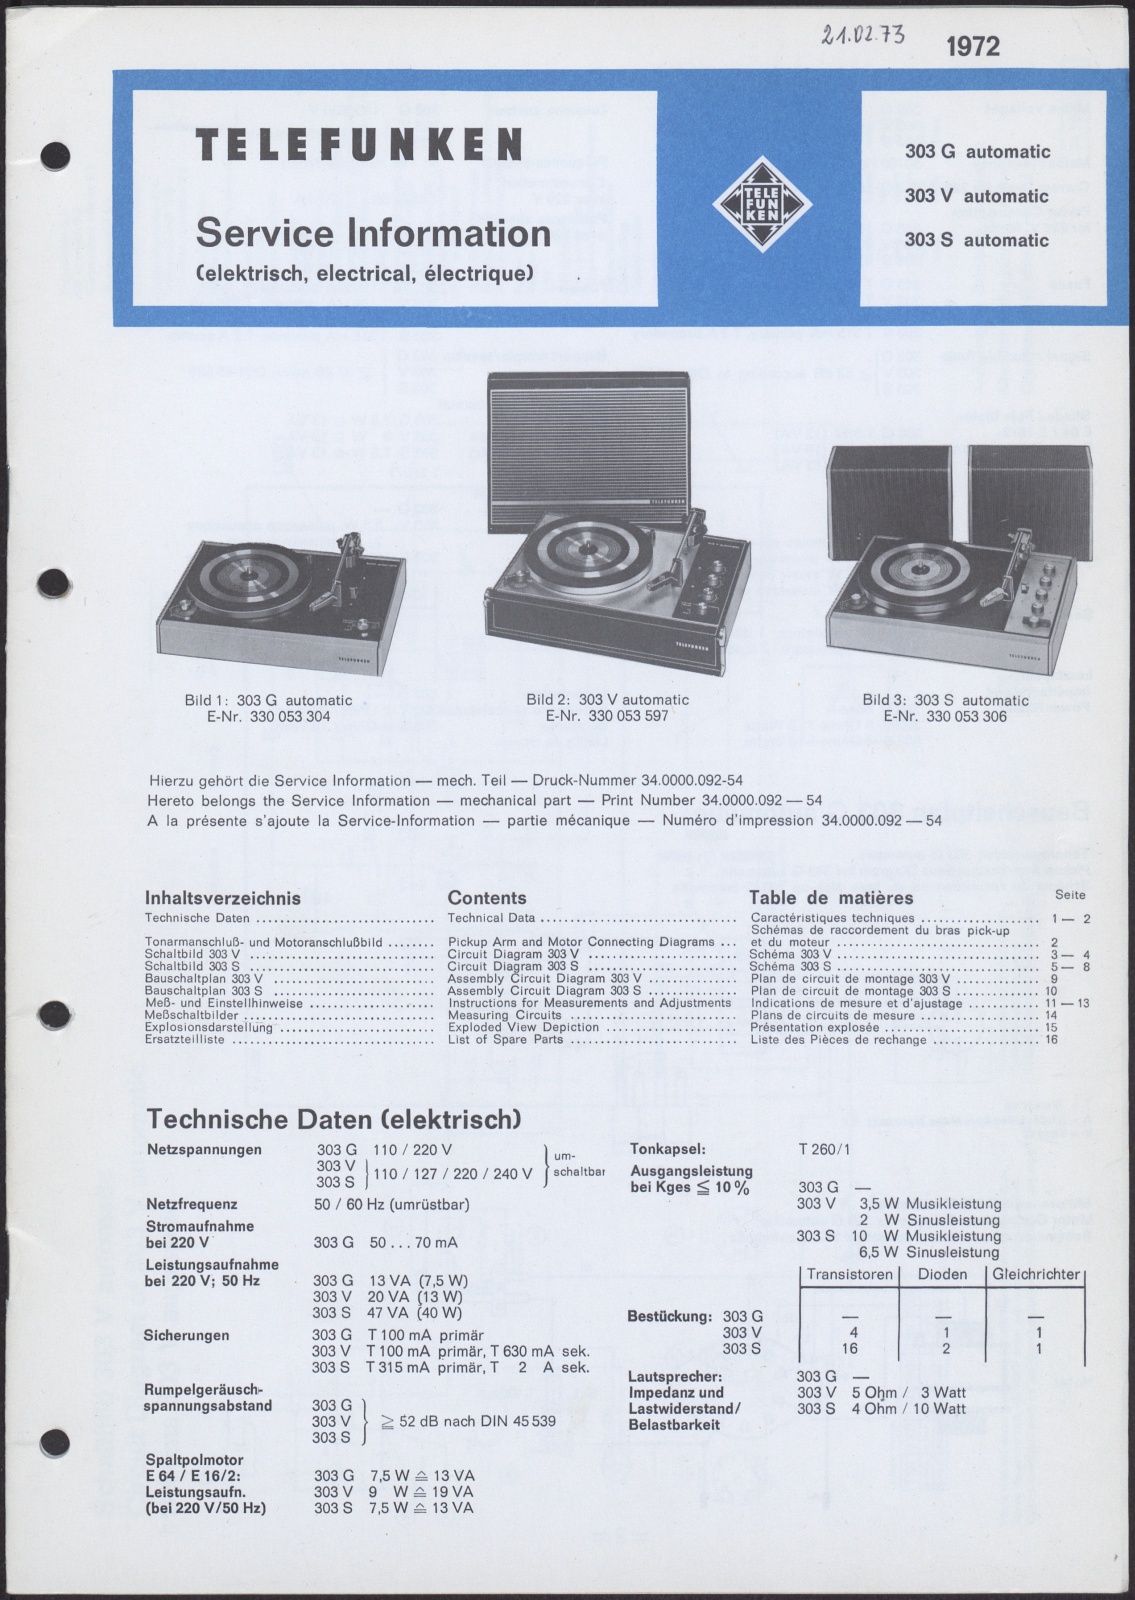 Bedienungsanleitung: Telefunken Service Information für 303 G automatic, 303 V automatic und 303 S automatic (Stiftung Deutsches Technikmuseum Berlin CC0)